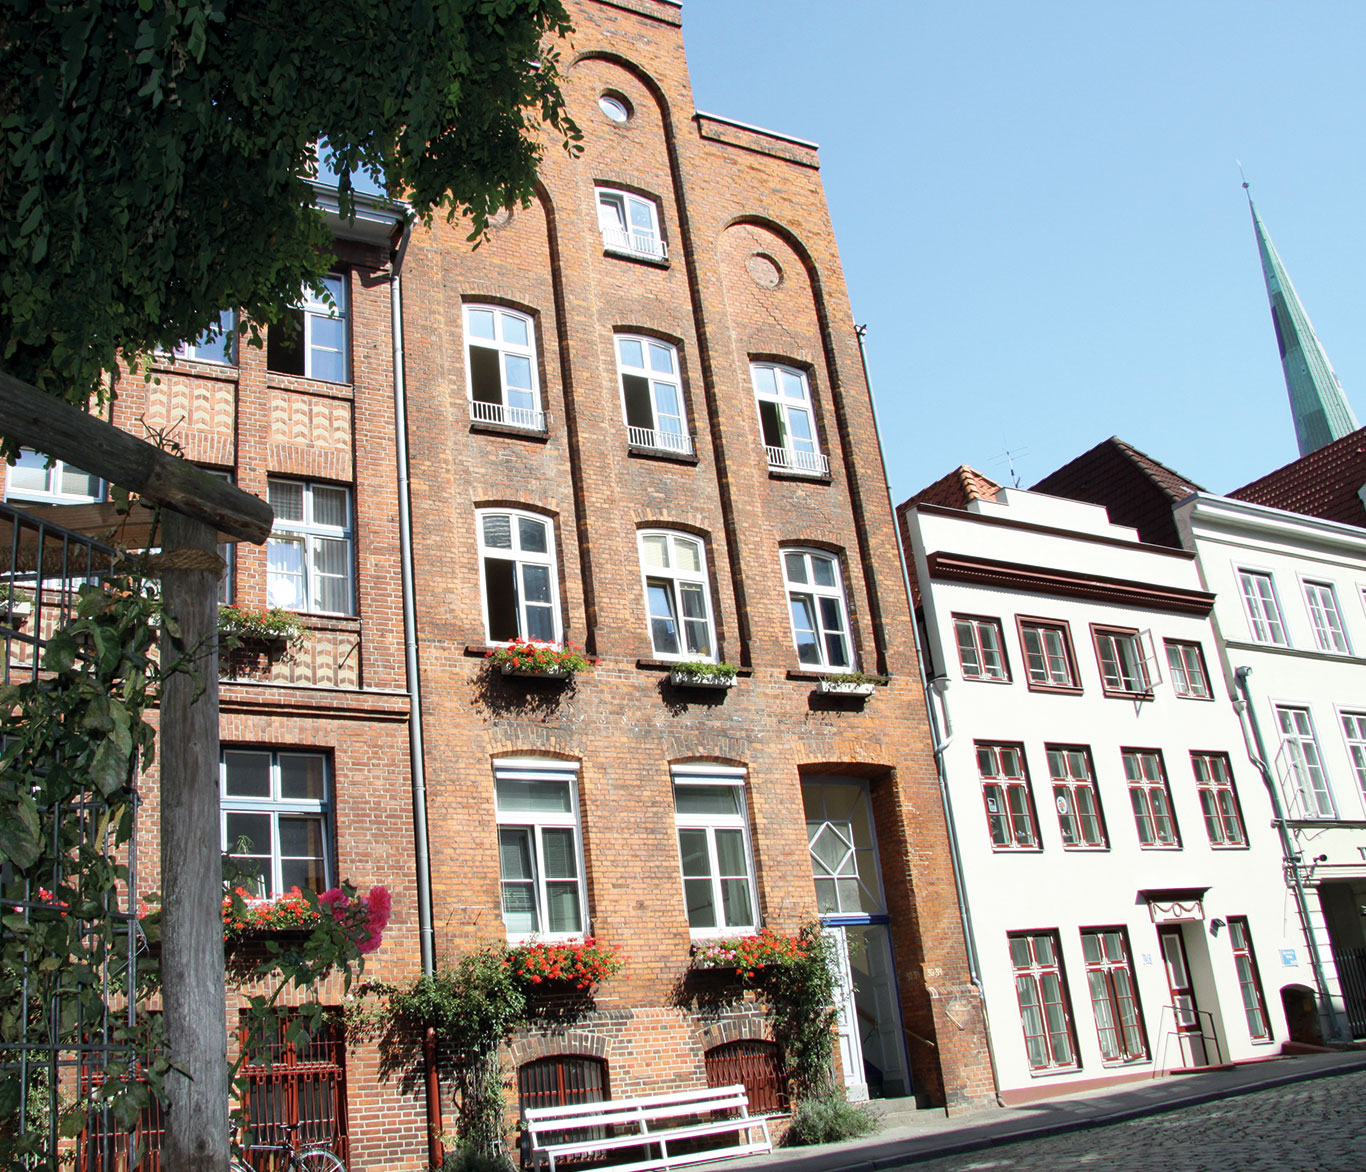 Wohneinrichtung Wichernhaus in der Lübecker Innenstadt.